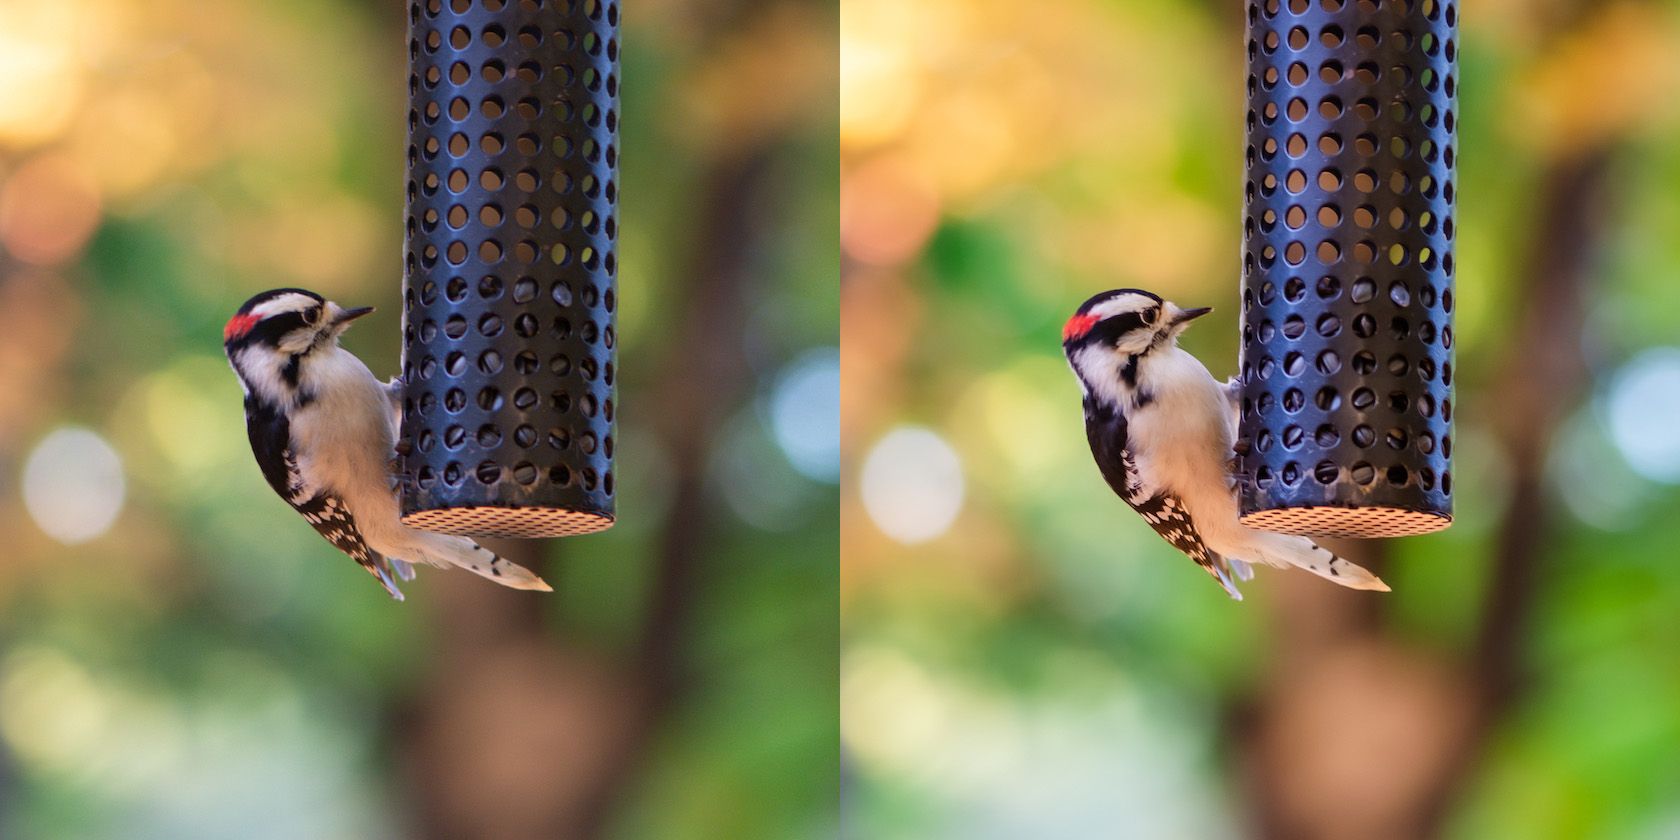 RAW vs JPEG image of a woodpecker photo